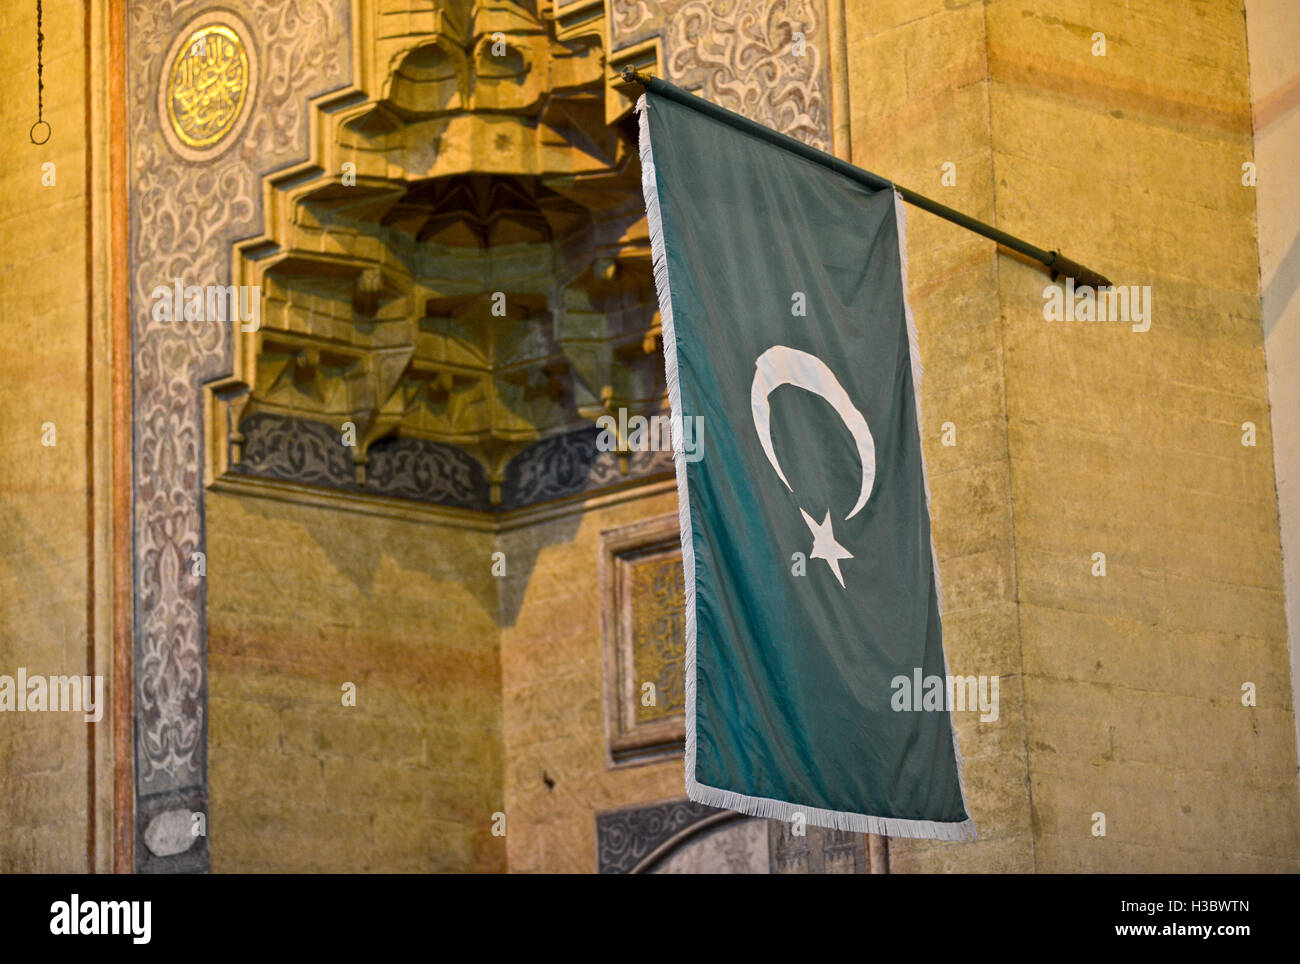 Islamische Flagge mit Halbmond und Stern-Motiv. Gazi Husrev-beg-Moschee, Sarajevo, Bosnien und Herzegowina Stockfoto